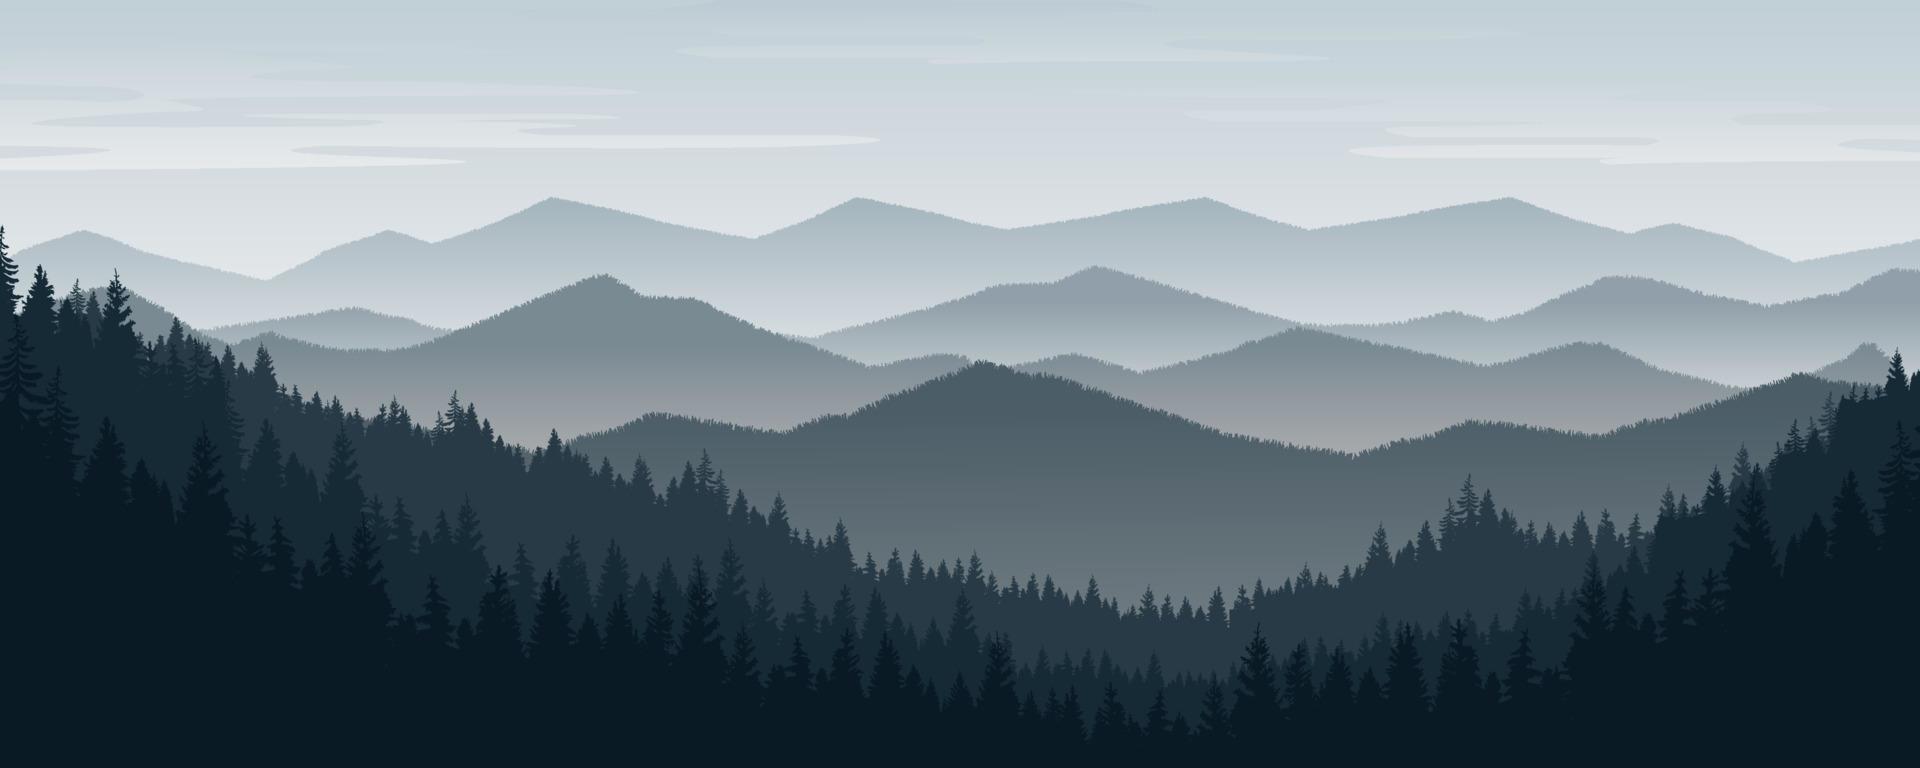 Berglandschaft mit Kiefern und Wäldern unter Winterhimmel. vektor